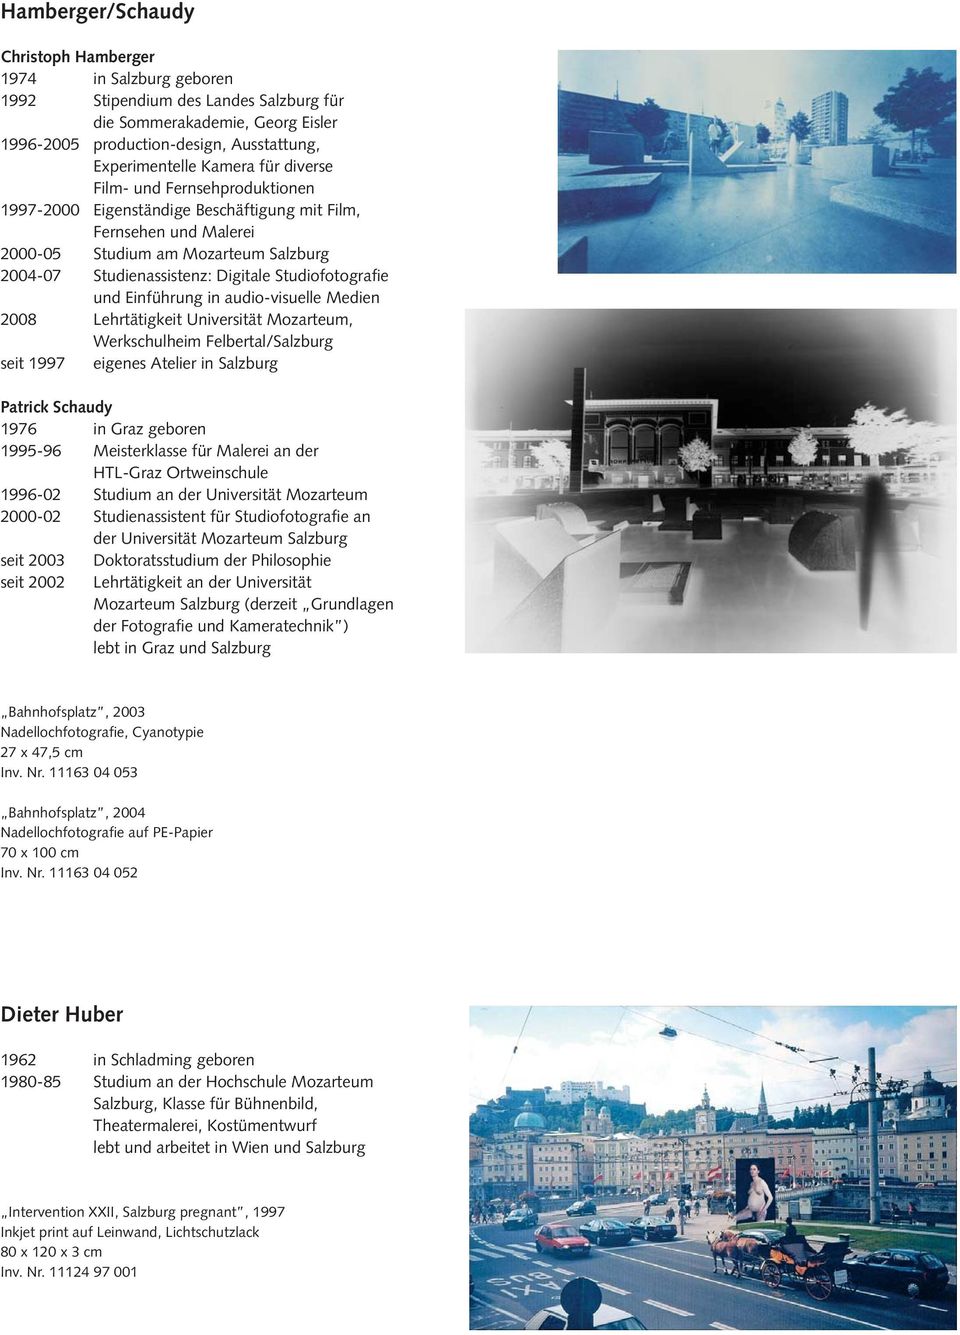 Studiofotografie und Einführung in audio-visuelle Medien 2008 Lehrtätigkeit Universität Mozarteum, Werkschulheim Felbertal/Salzburg seit 1997 eigenes Atelier in Salzburg Patrick Schaudy 1976 in Graz